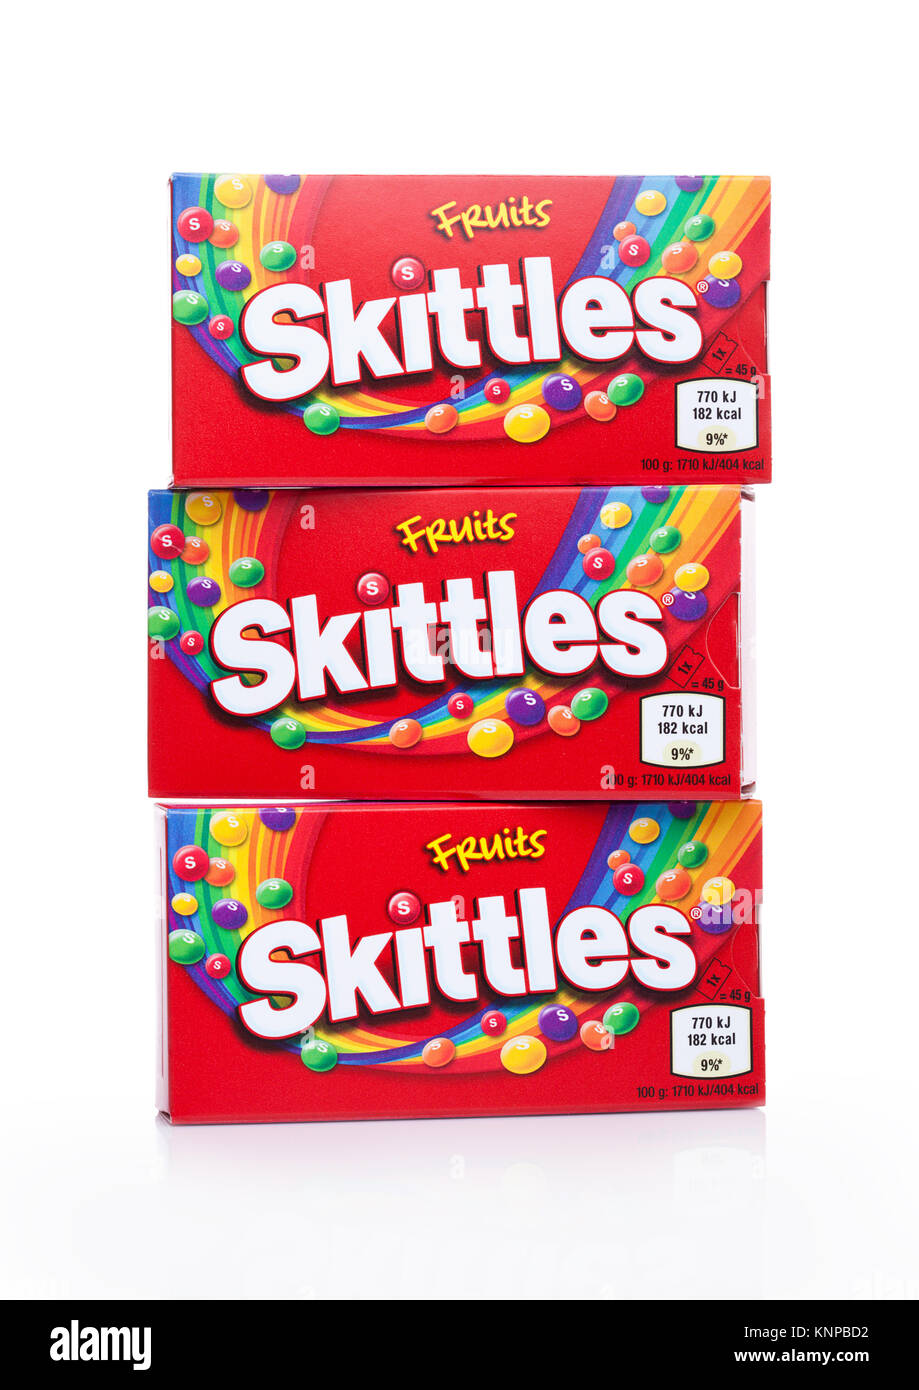 Londres, UK - Décembre 07, 2017 : Candy Pack quilles sur fond blanc. Skittles est une marque de bonbons à saveur de fruits. Banque D'Images